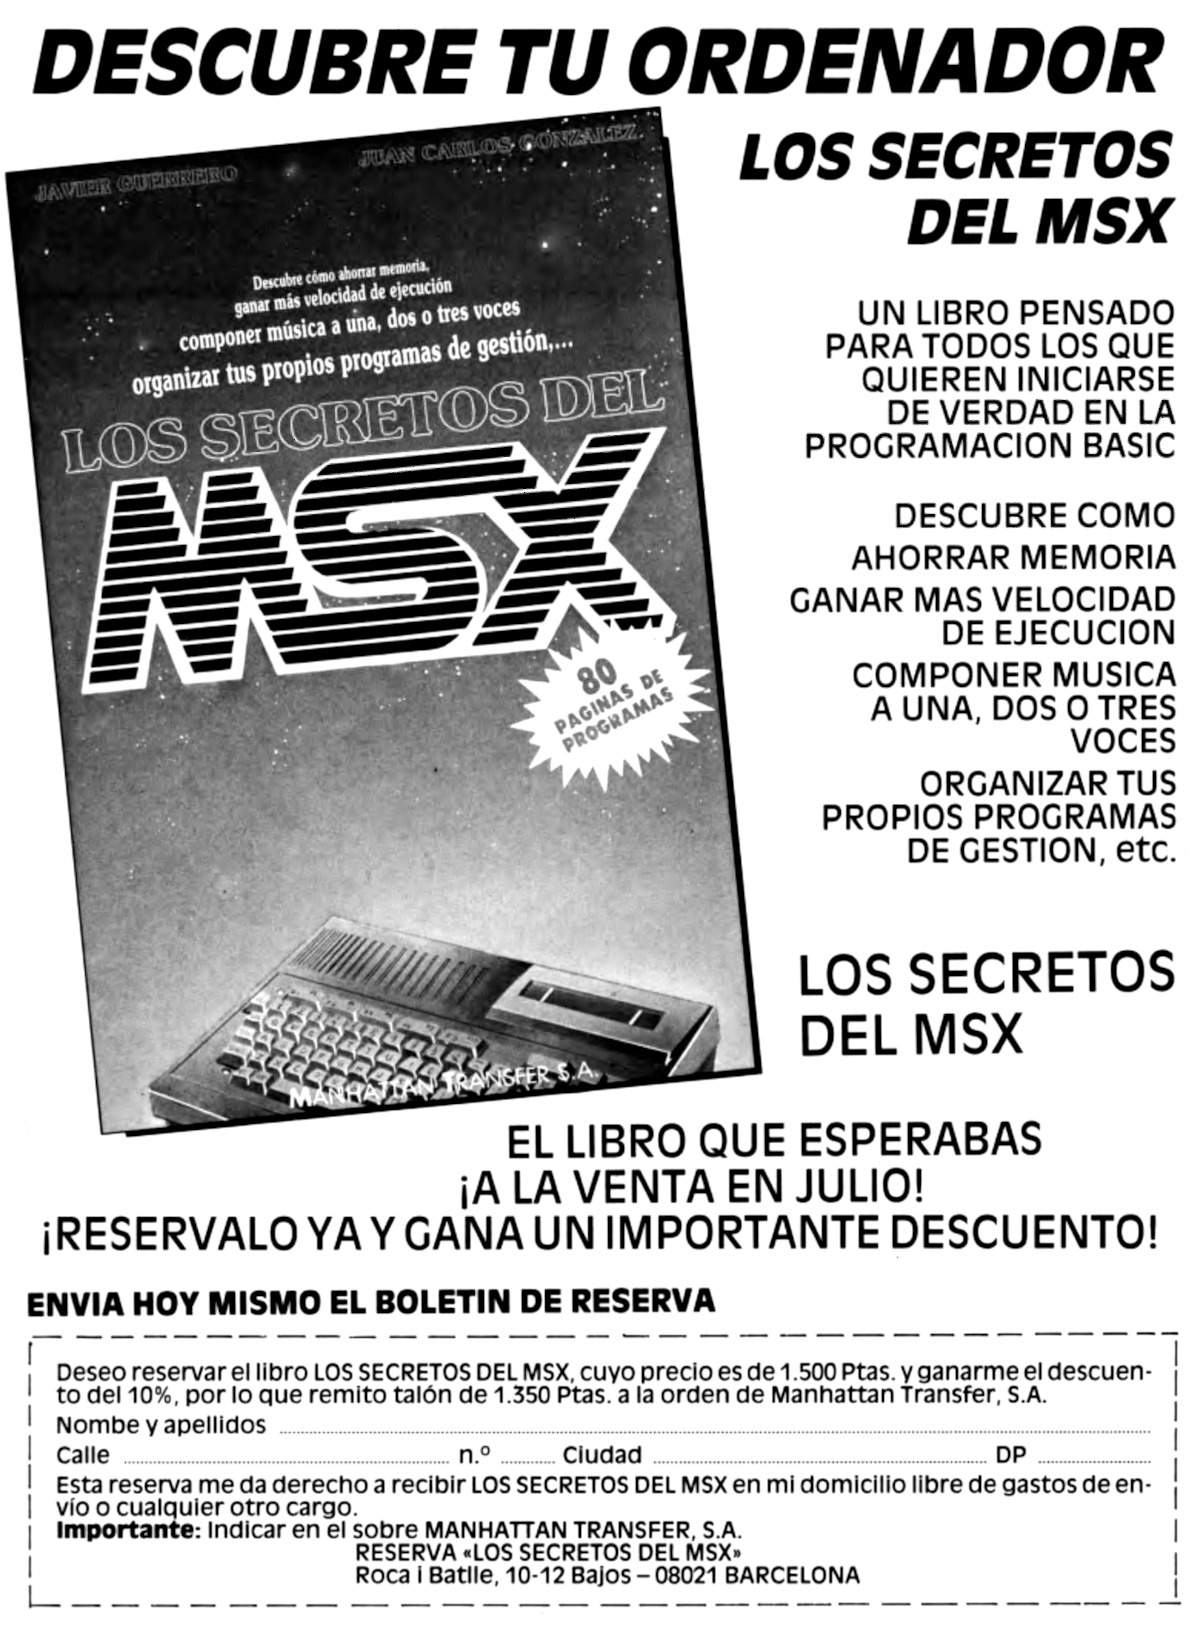 msx-extra 2